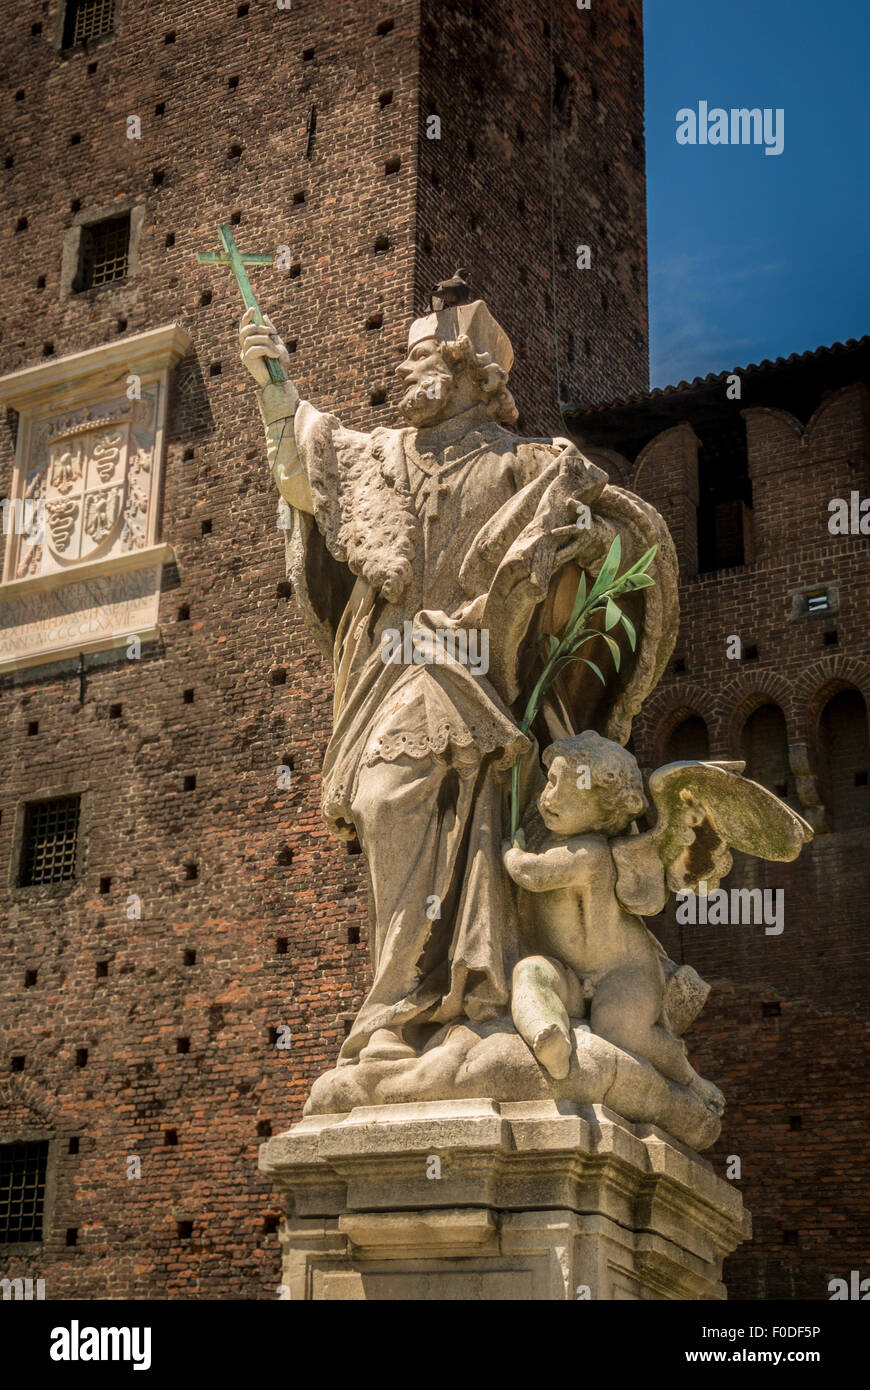 Statue at Sforza Castle, Castello Sforzesco. Milan Italy Stock Photo